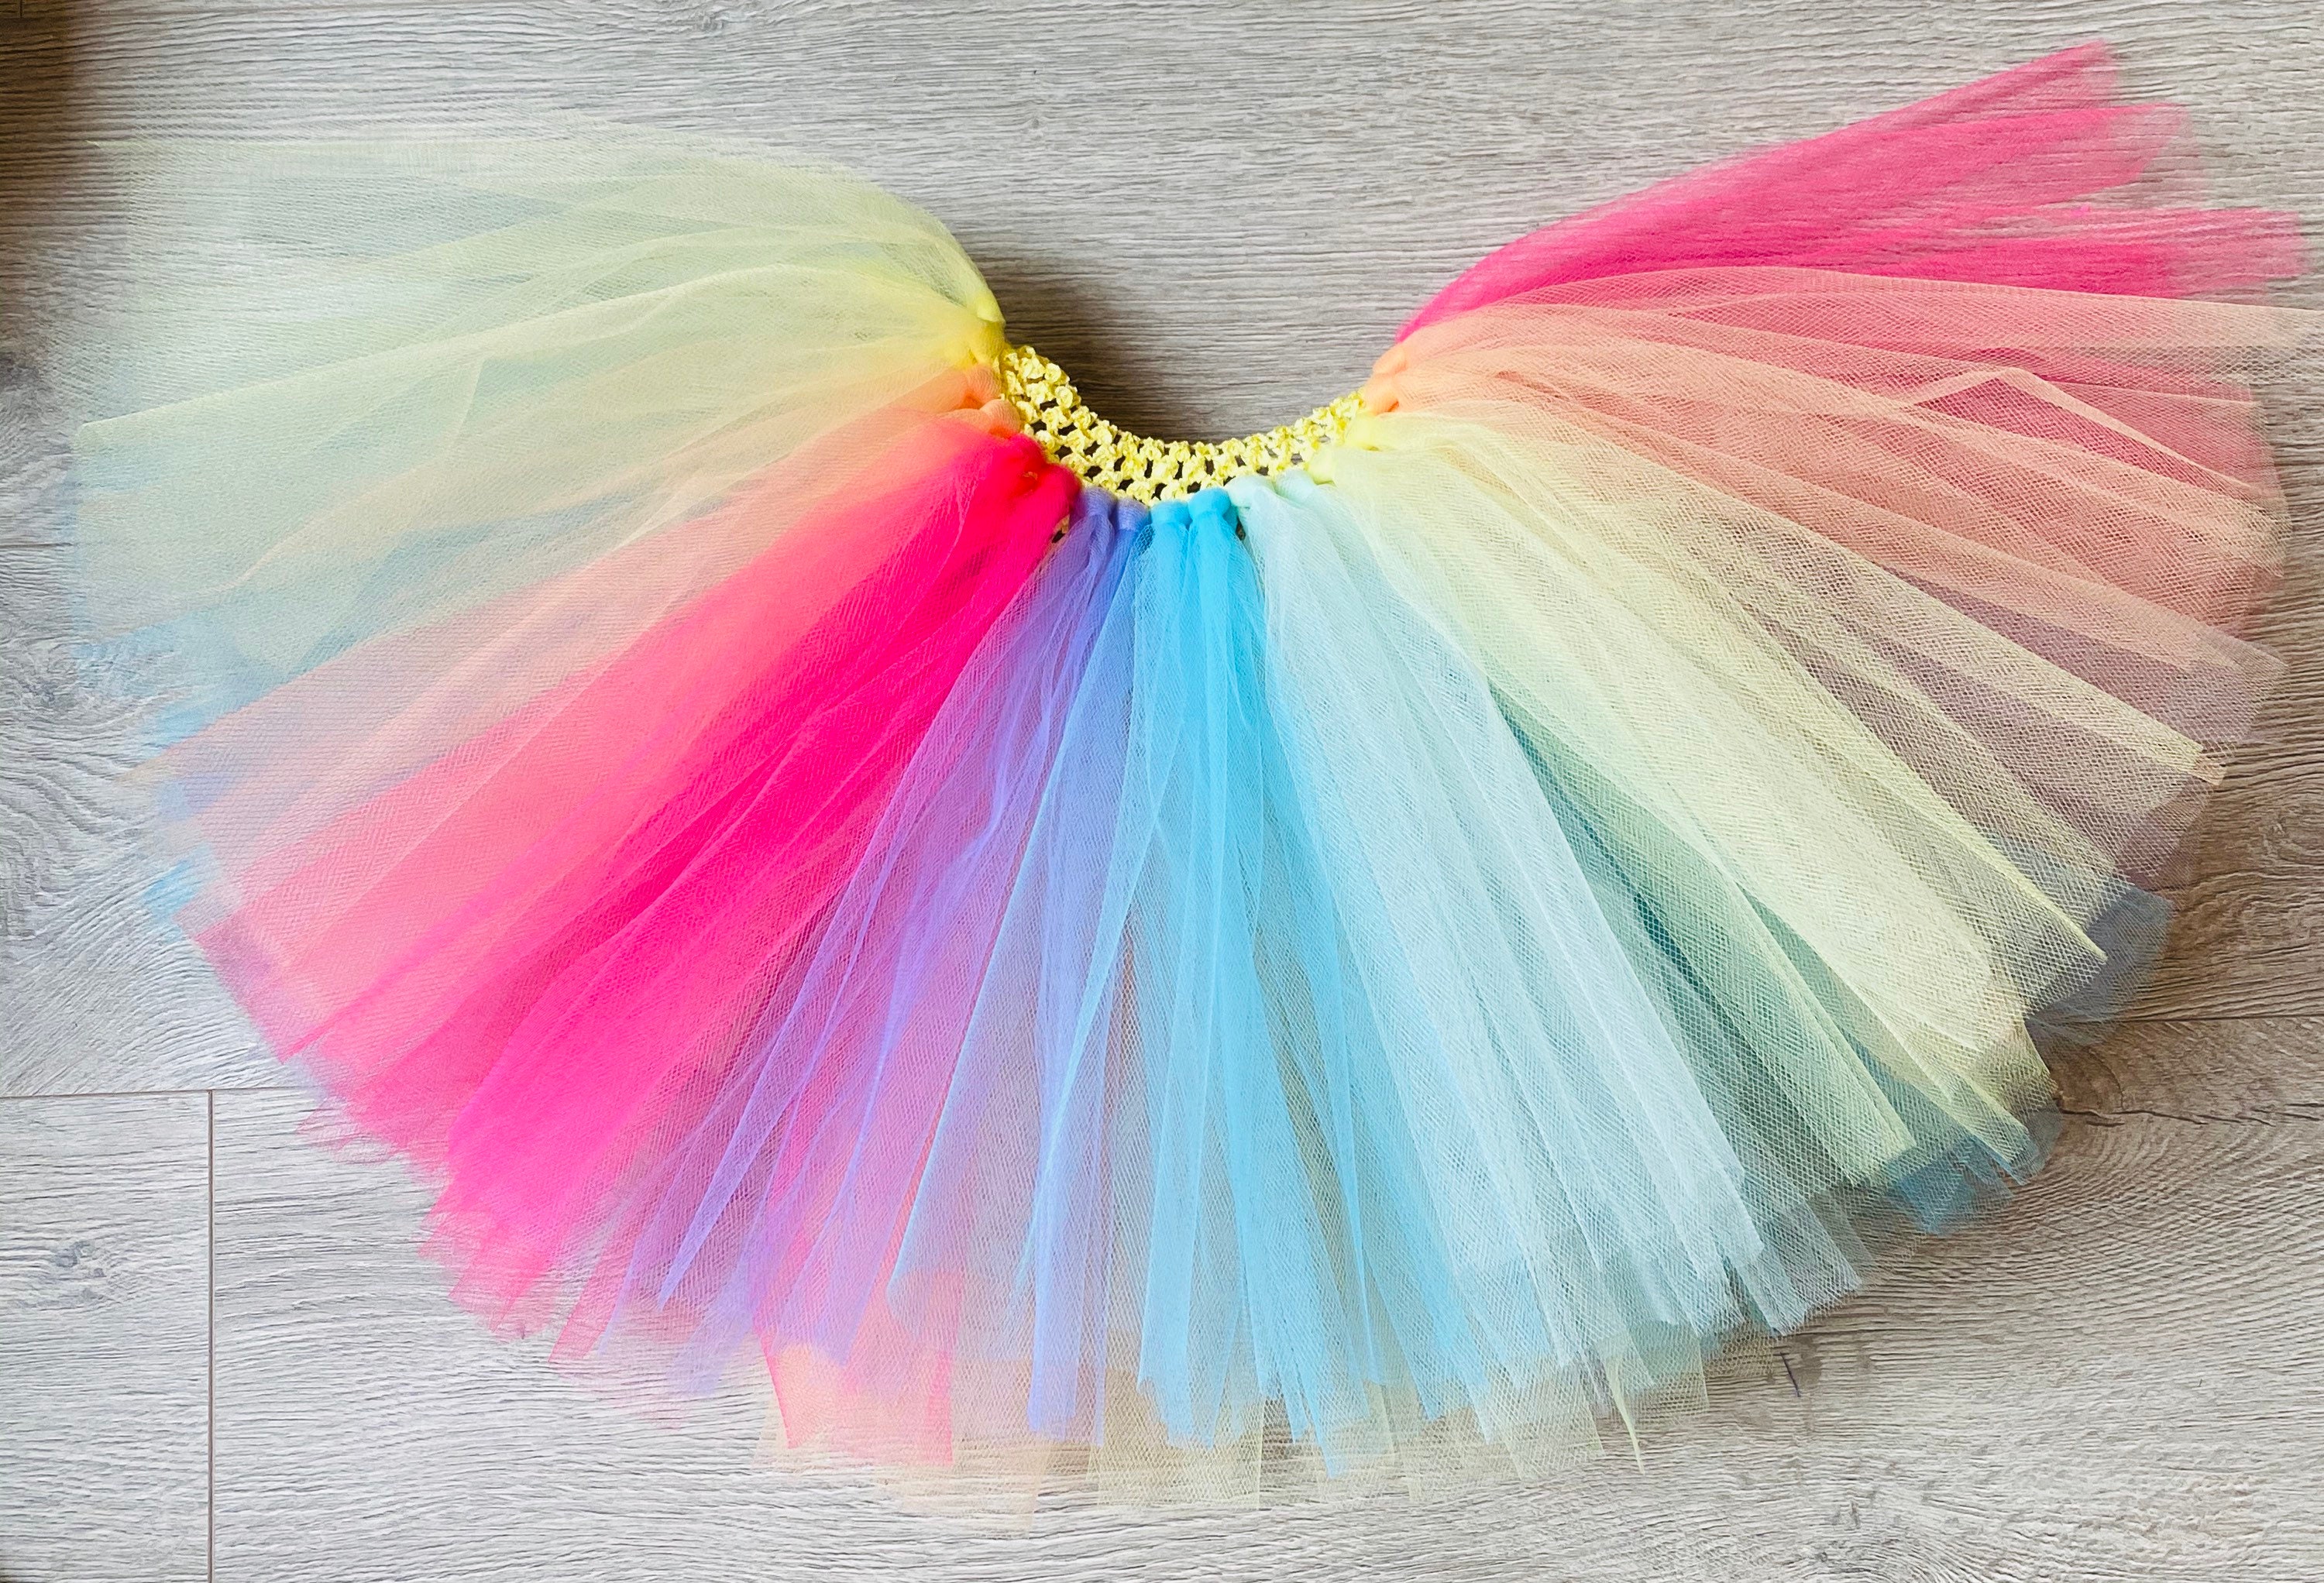 Falda tutu tul multicolor en #sevilla para Carnaval tienda Online disfraces